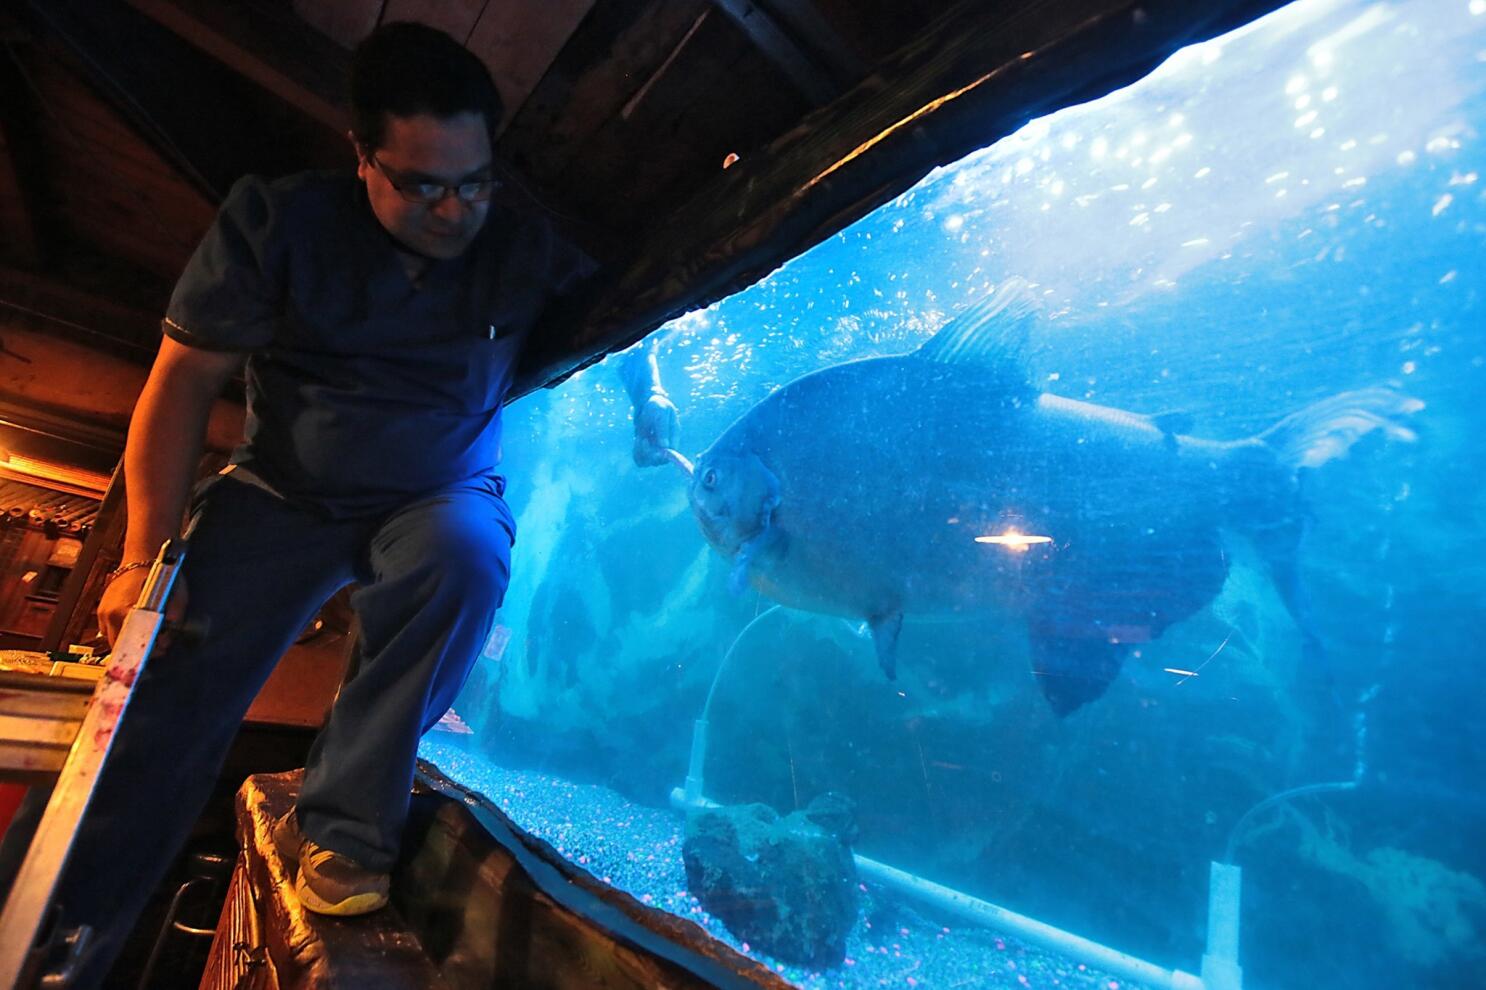 pacu fish in aquarium